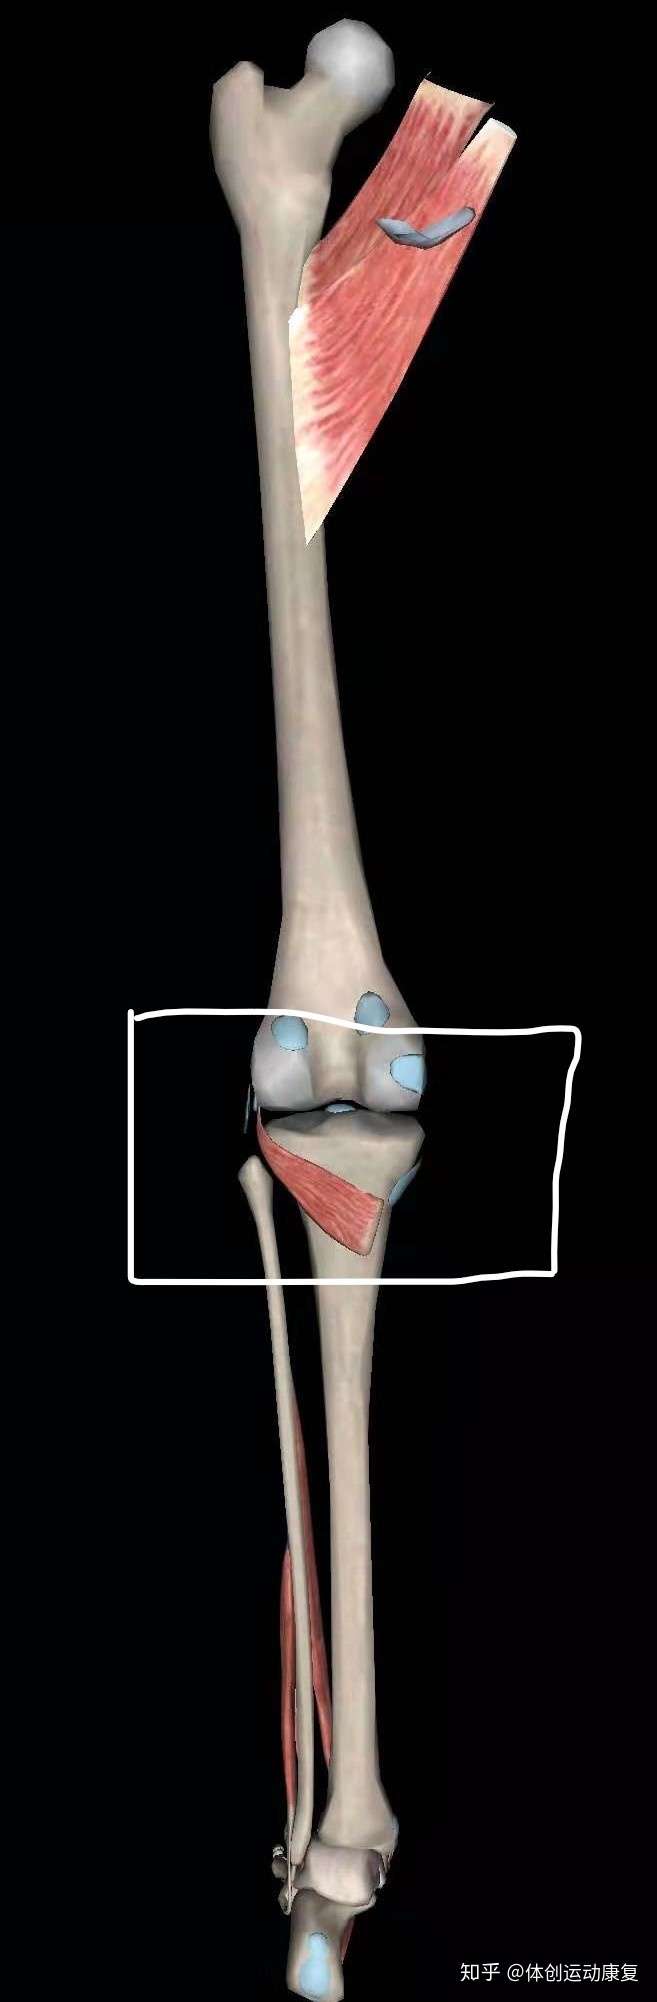 您好,在膝窝处解剖结构有:腘肌,腓肠肌止点,后交叉韧带,前交叉韧带 1